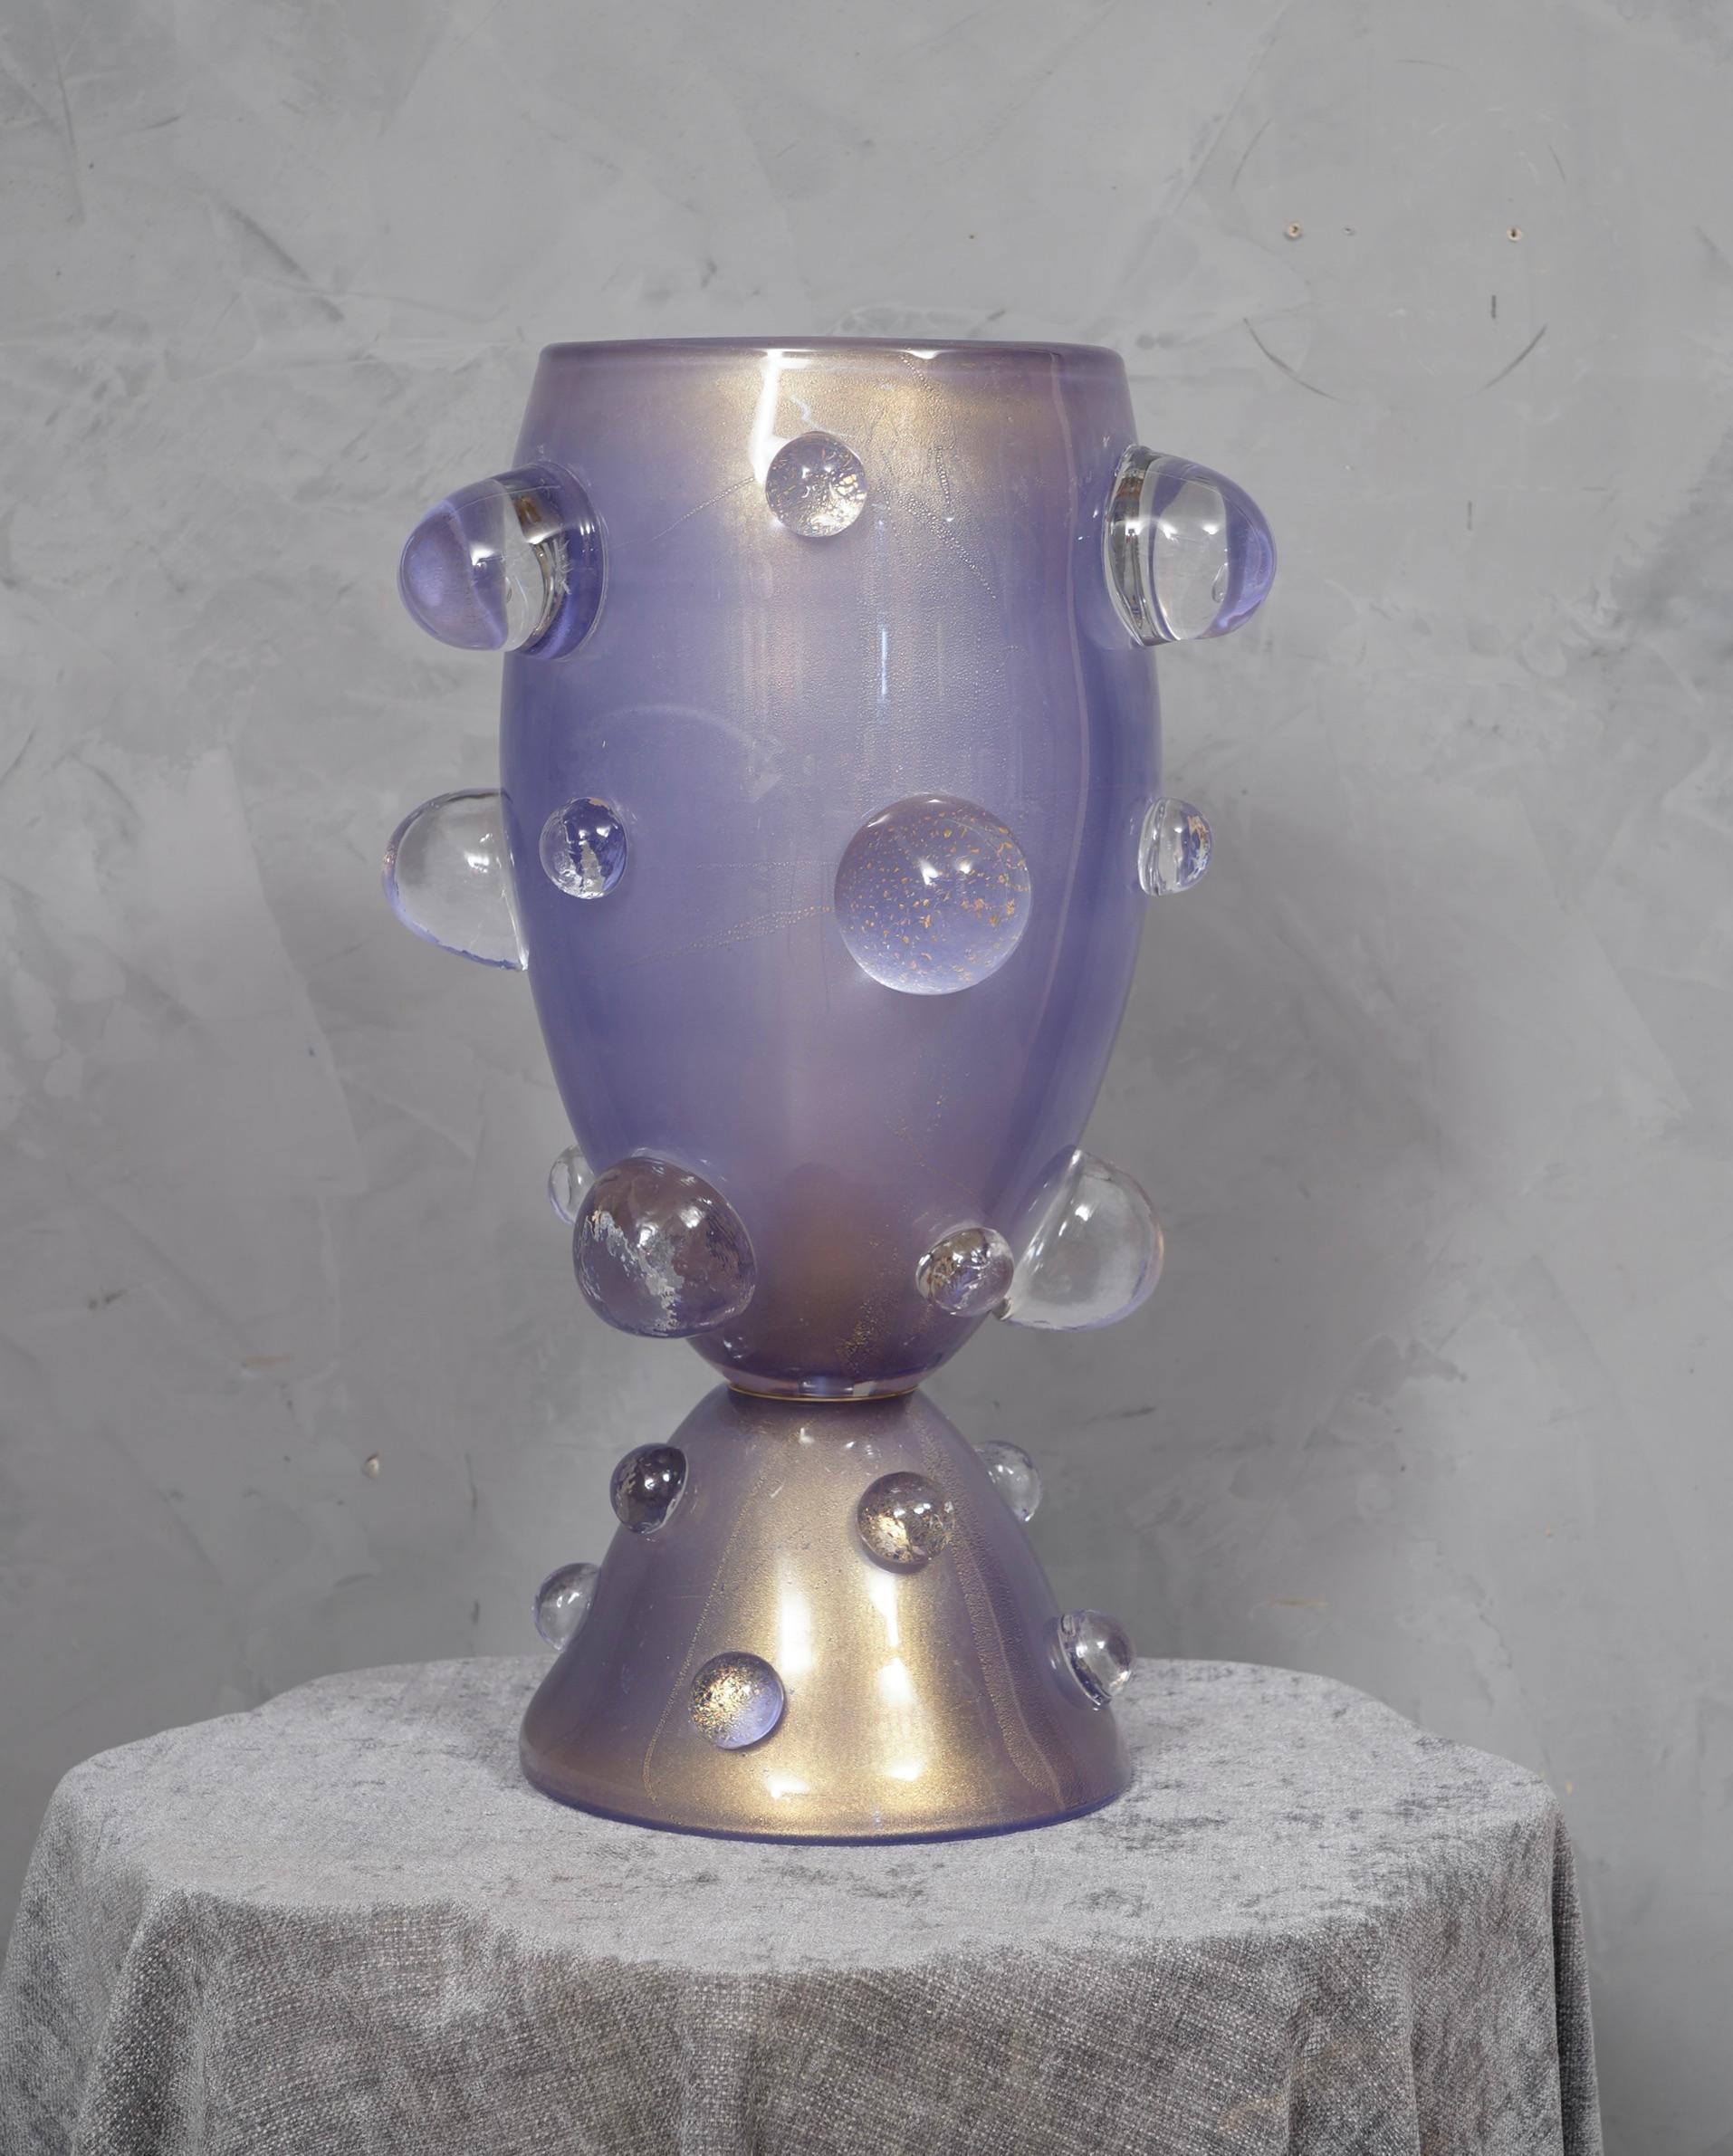 Prächtige Murano Tischlampen gestanzt Barovier & Toso. Ein hervorragendes helles Veilchenblau. Stilvolles und sehr spezielles Design durch die großen Halbkugeln, die an der großen Tasse befestigt sind.

Die Tischlampen bestehen aus einer großen